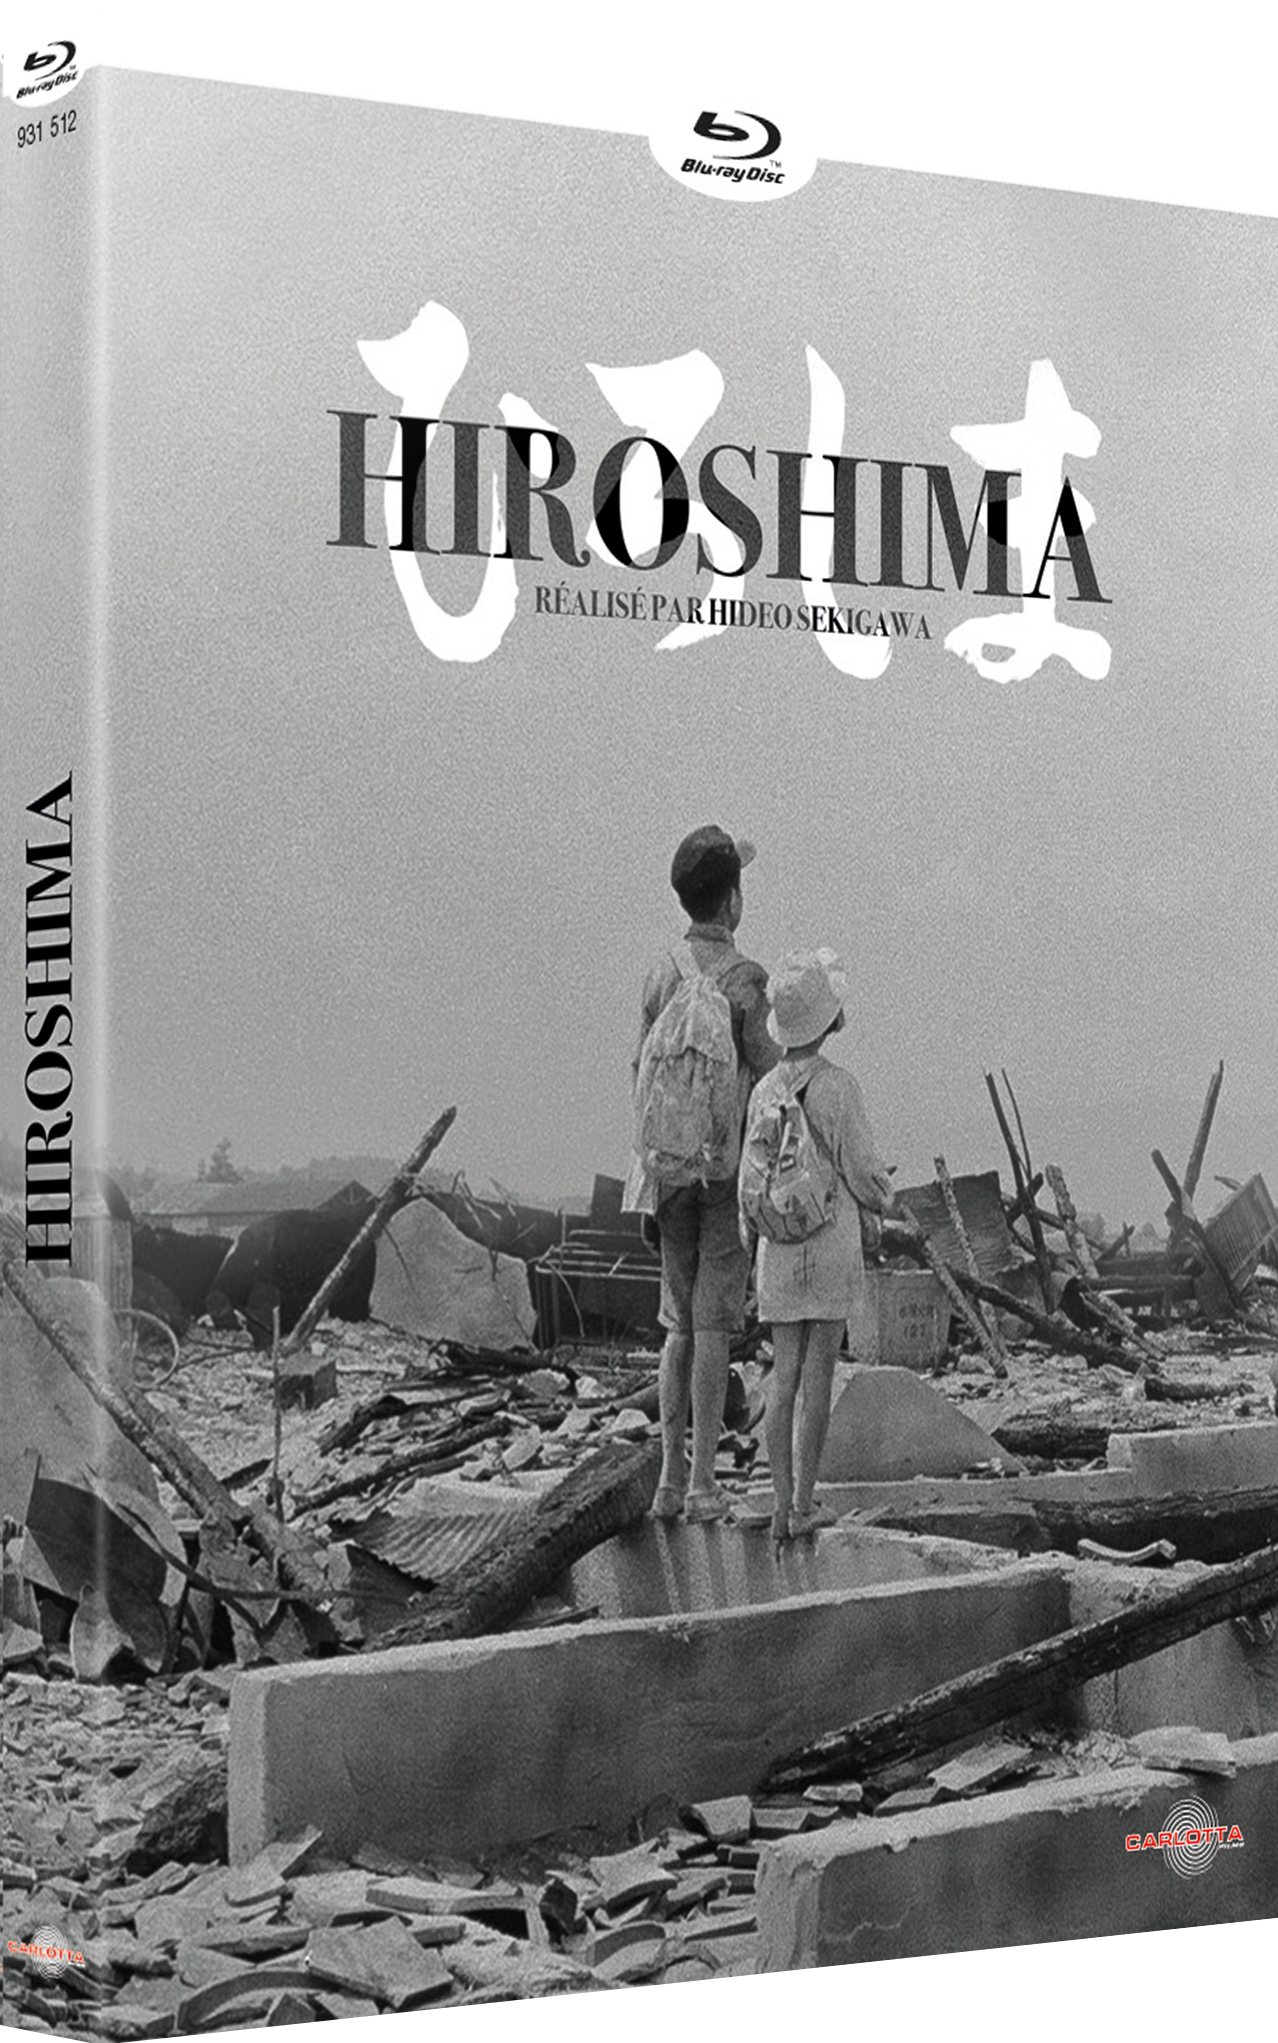 Hiroshima de Hideo Sekigawa sort en Blu-Ray et DVD.